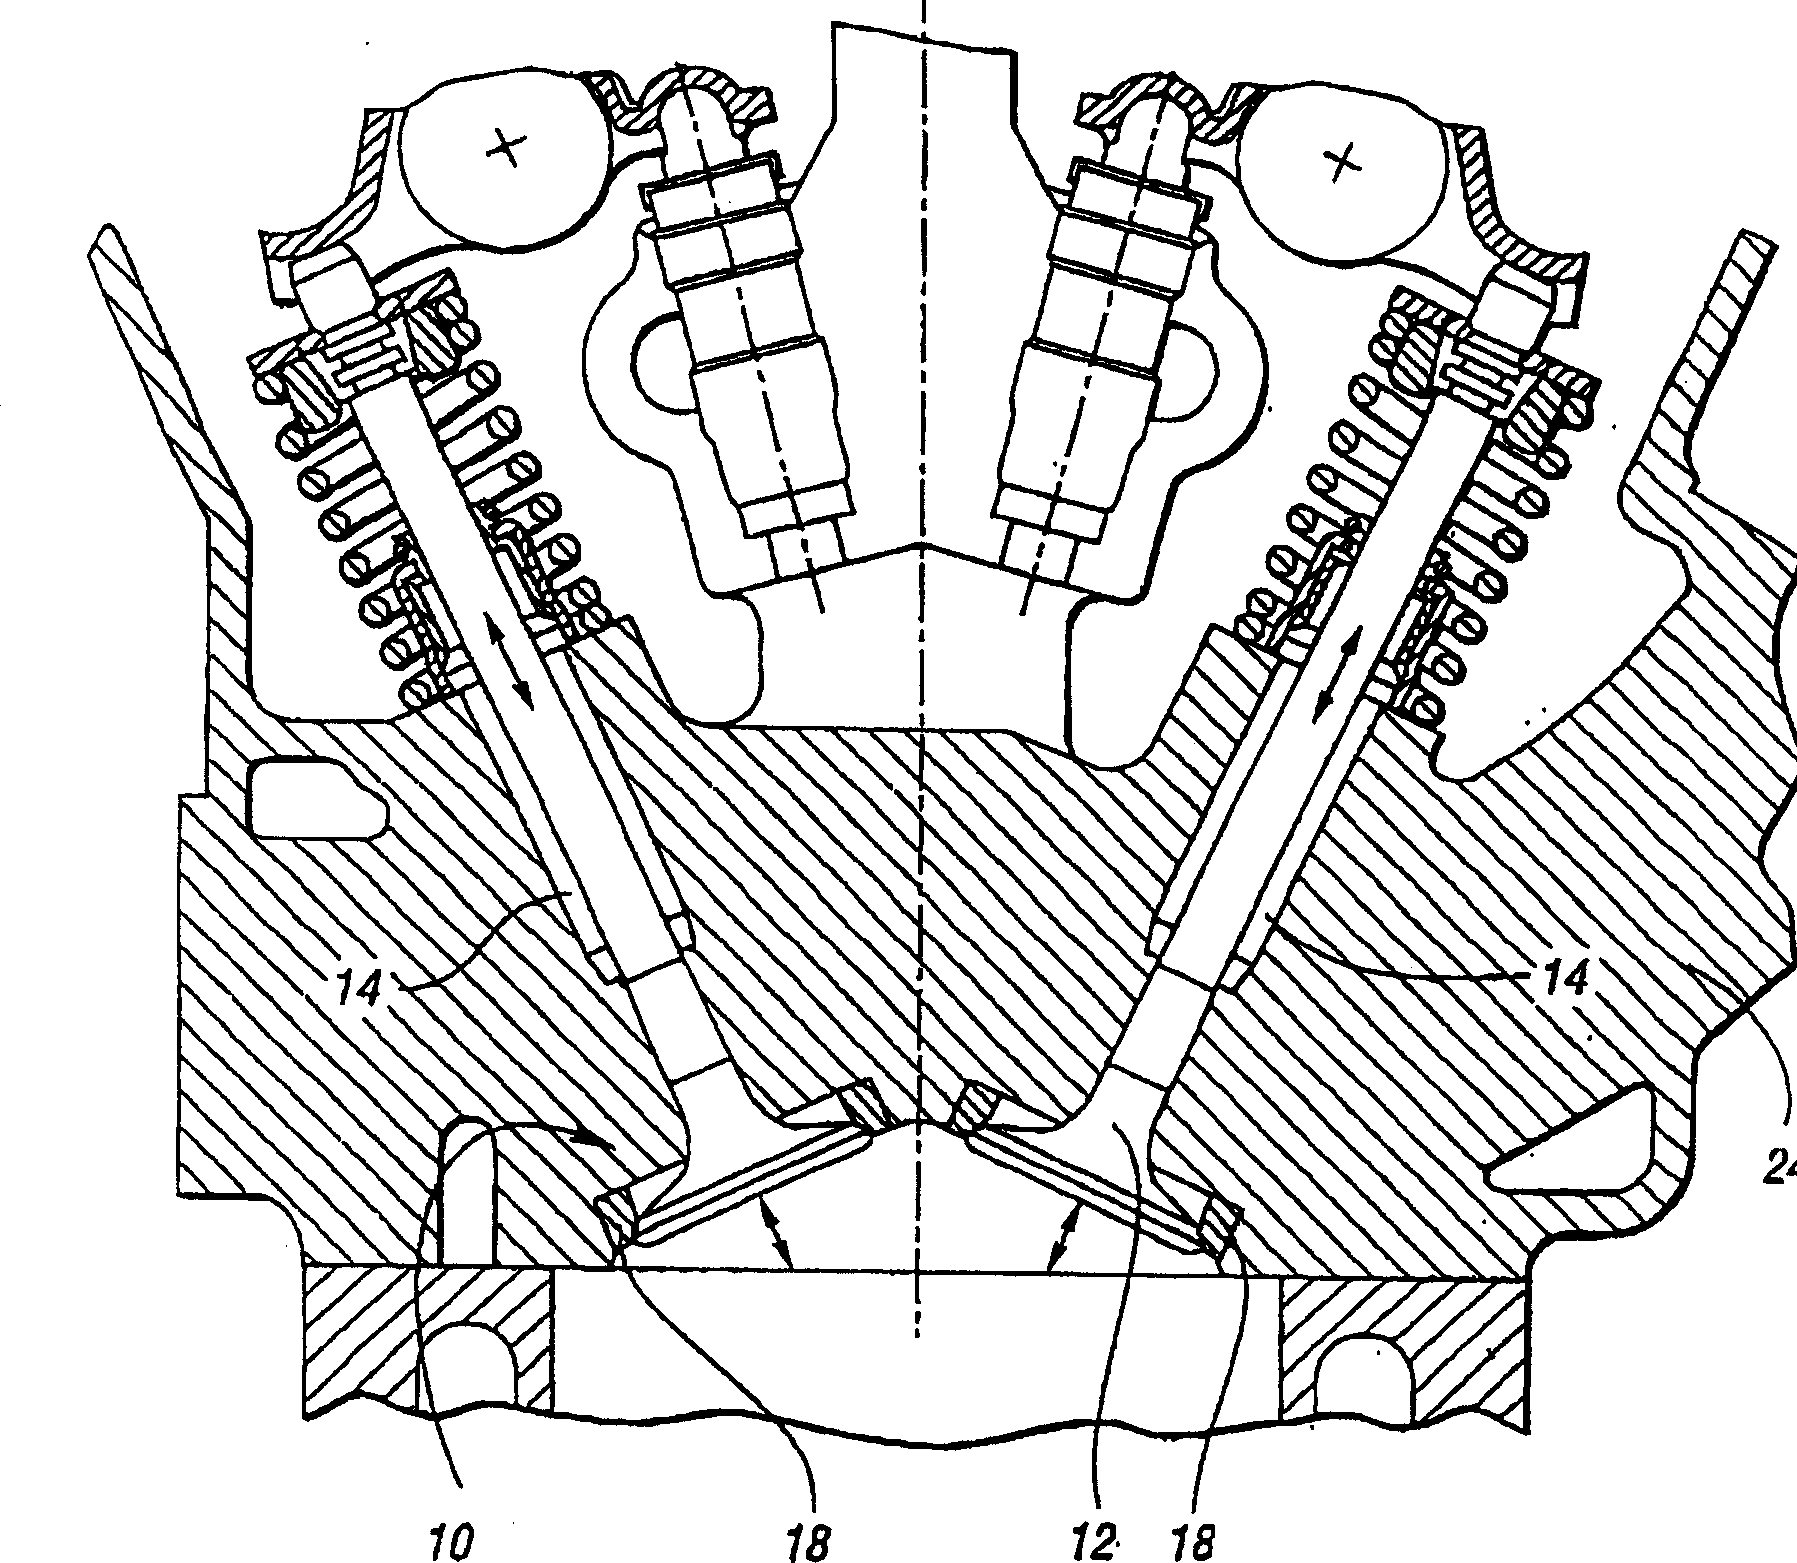 Power-matallurgy valve seat inserts